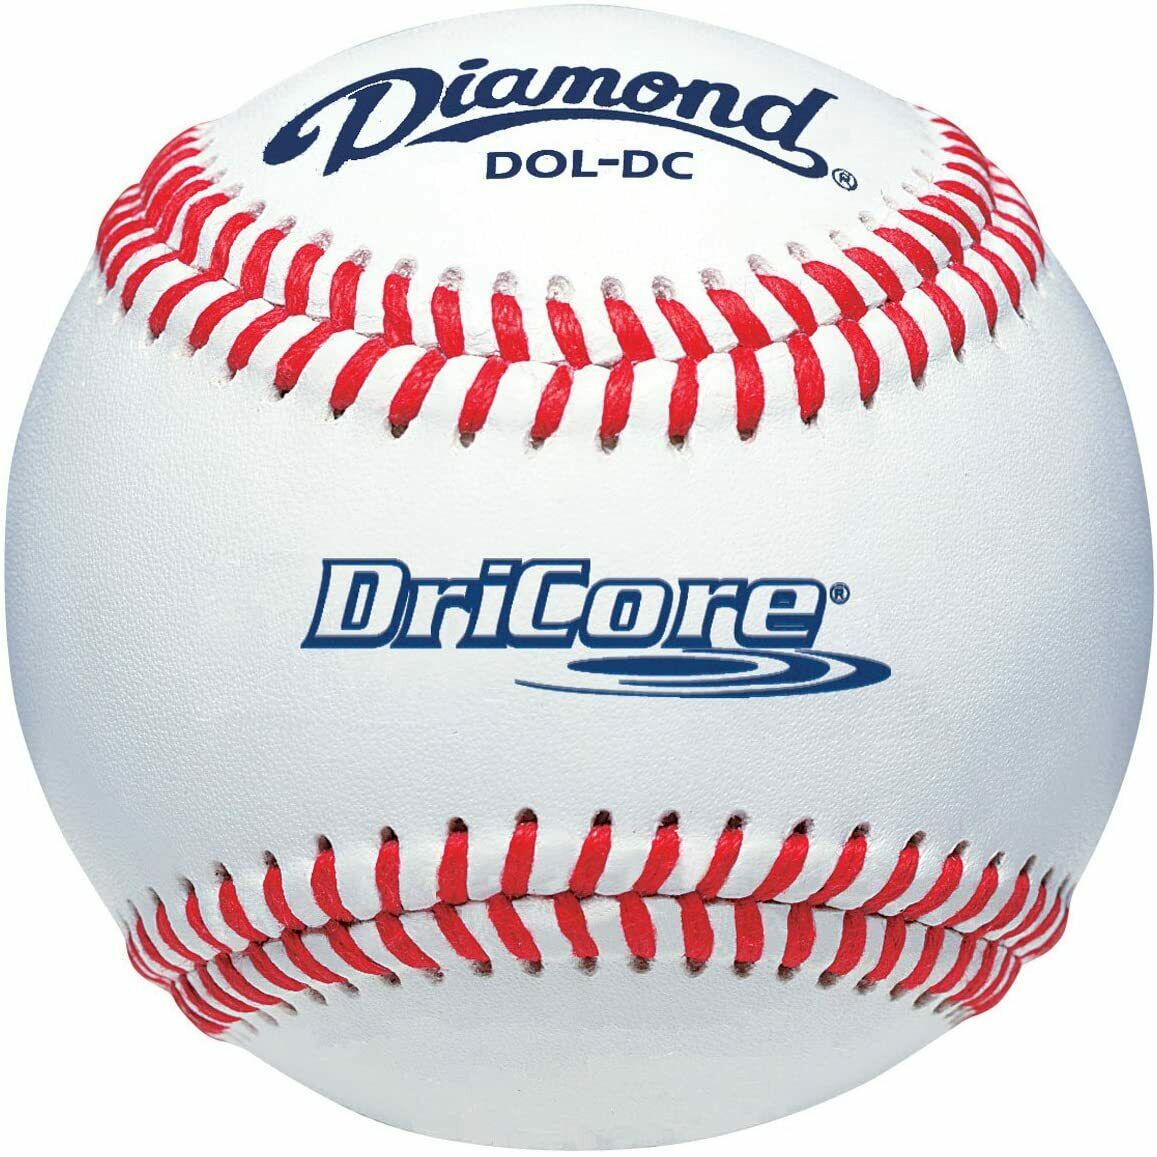 Deportes Diamante | DOL-DC | DriCore Pelotas de béisbol para clima húmedo | 1 docena de bolas